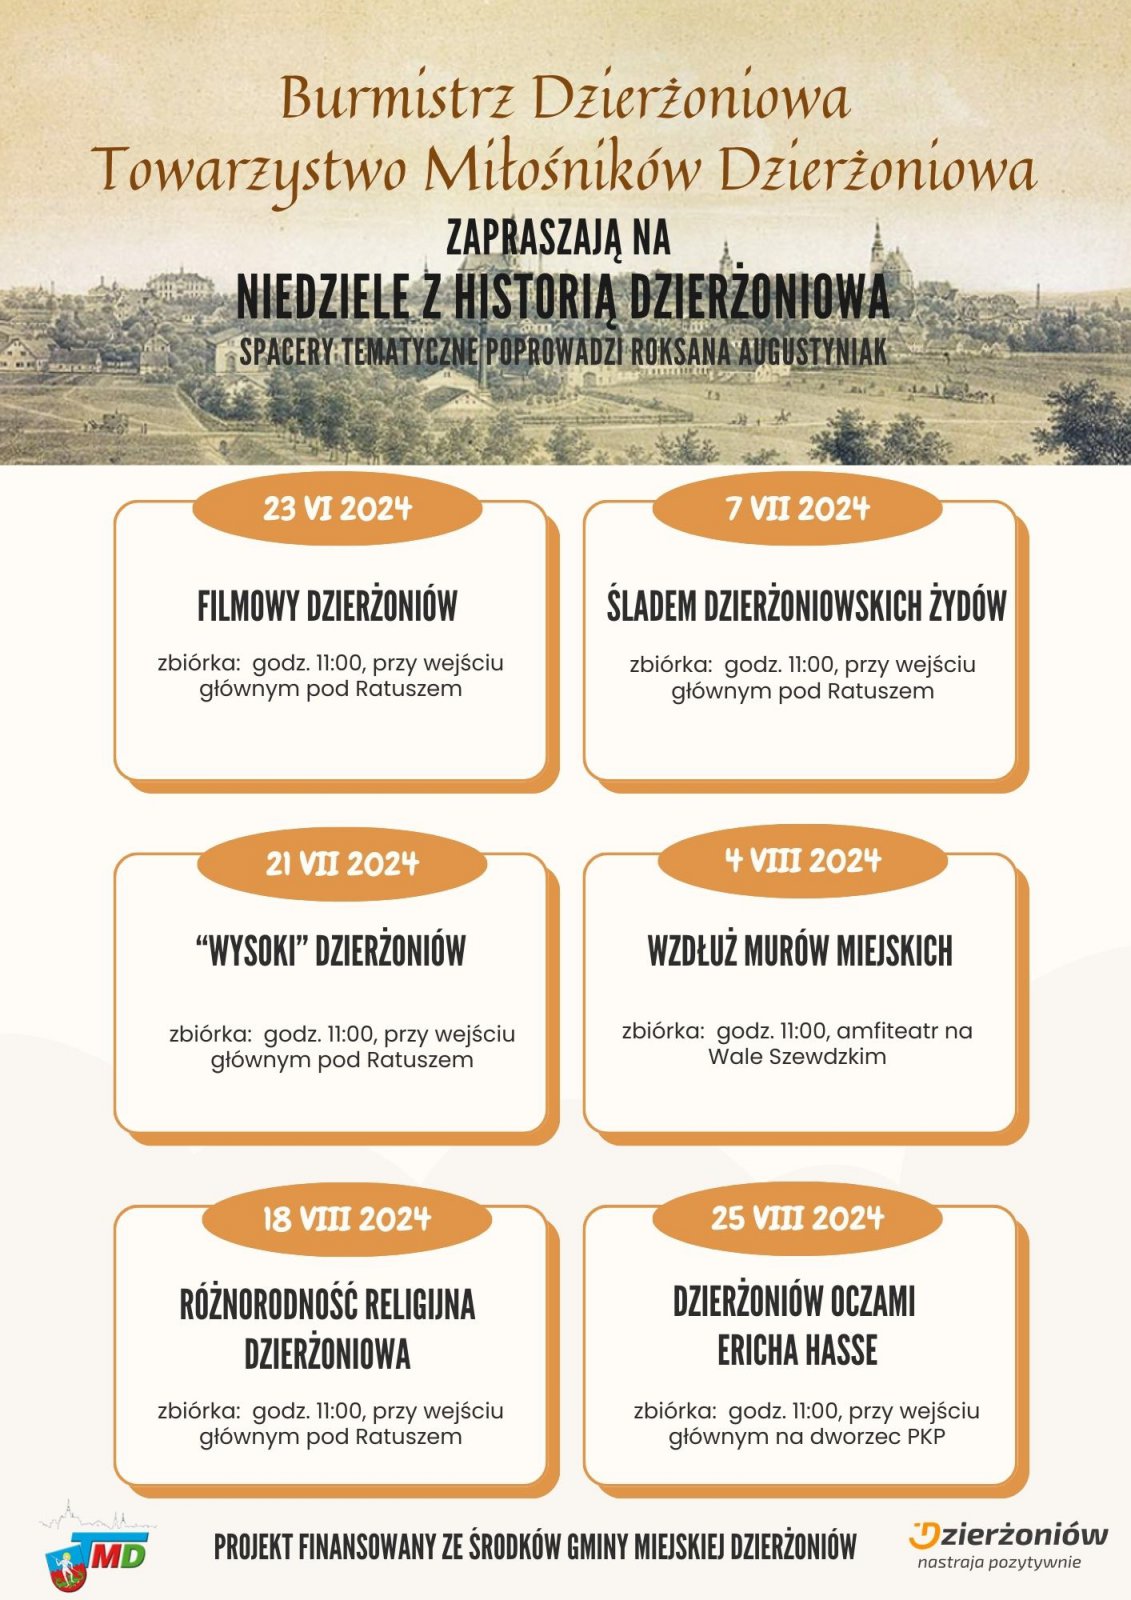 Plakat z informacjami podanymi w teksćie i starą panoramą Dzierżoniowa